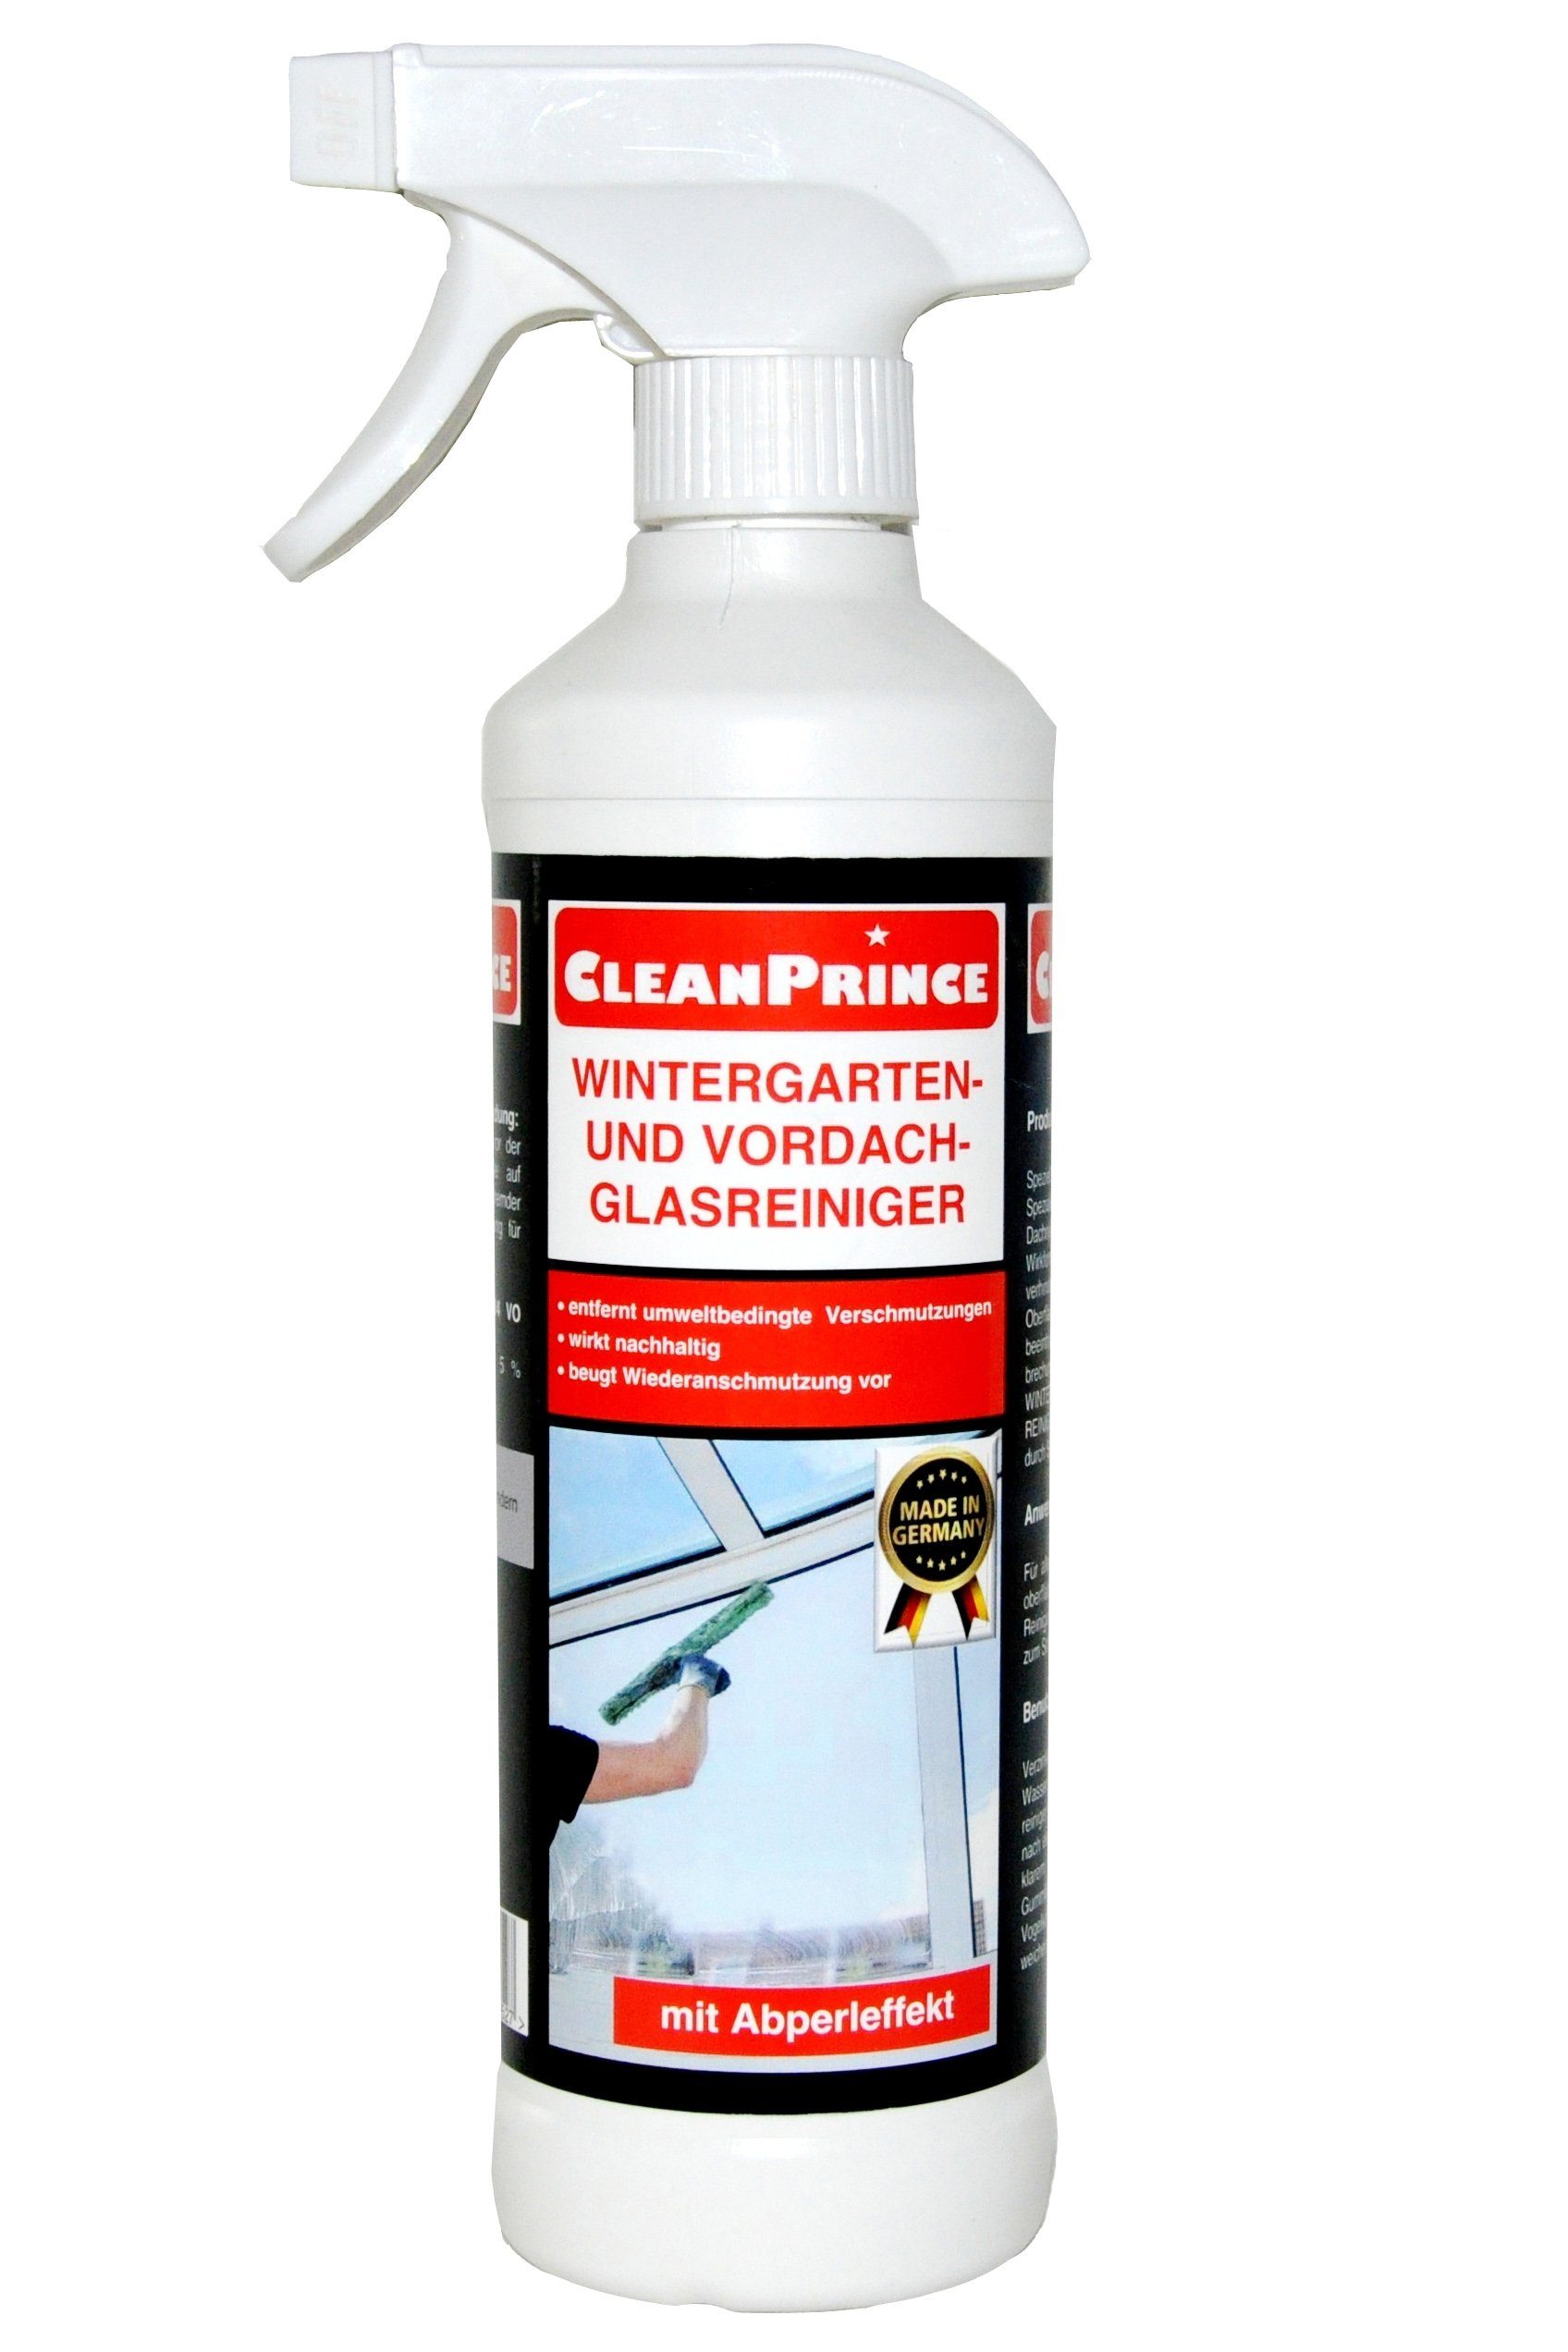 CleanPrince Wintergarten und Vordach Glasreiniger (gebrauchsfertiger Spezialreiniger) Glasreiniger